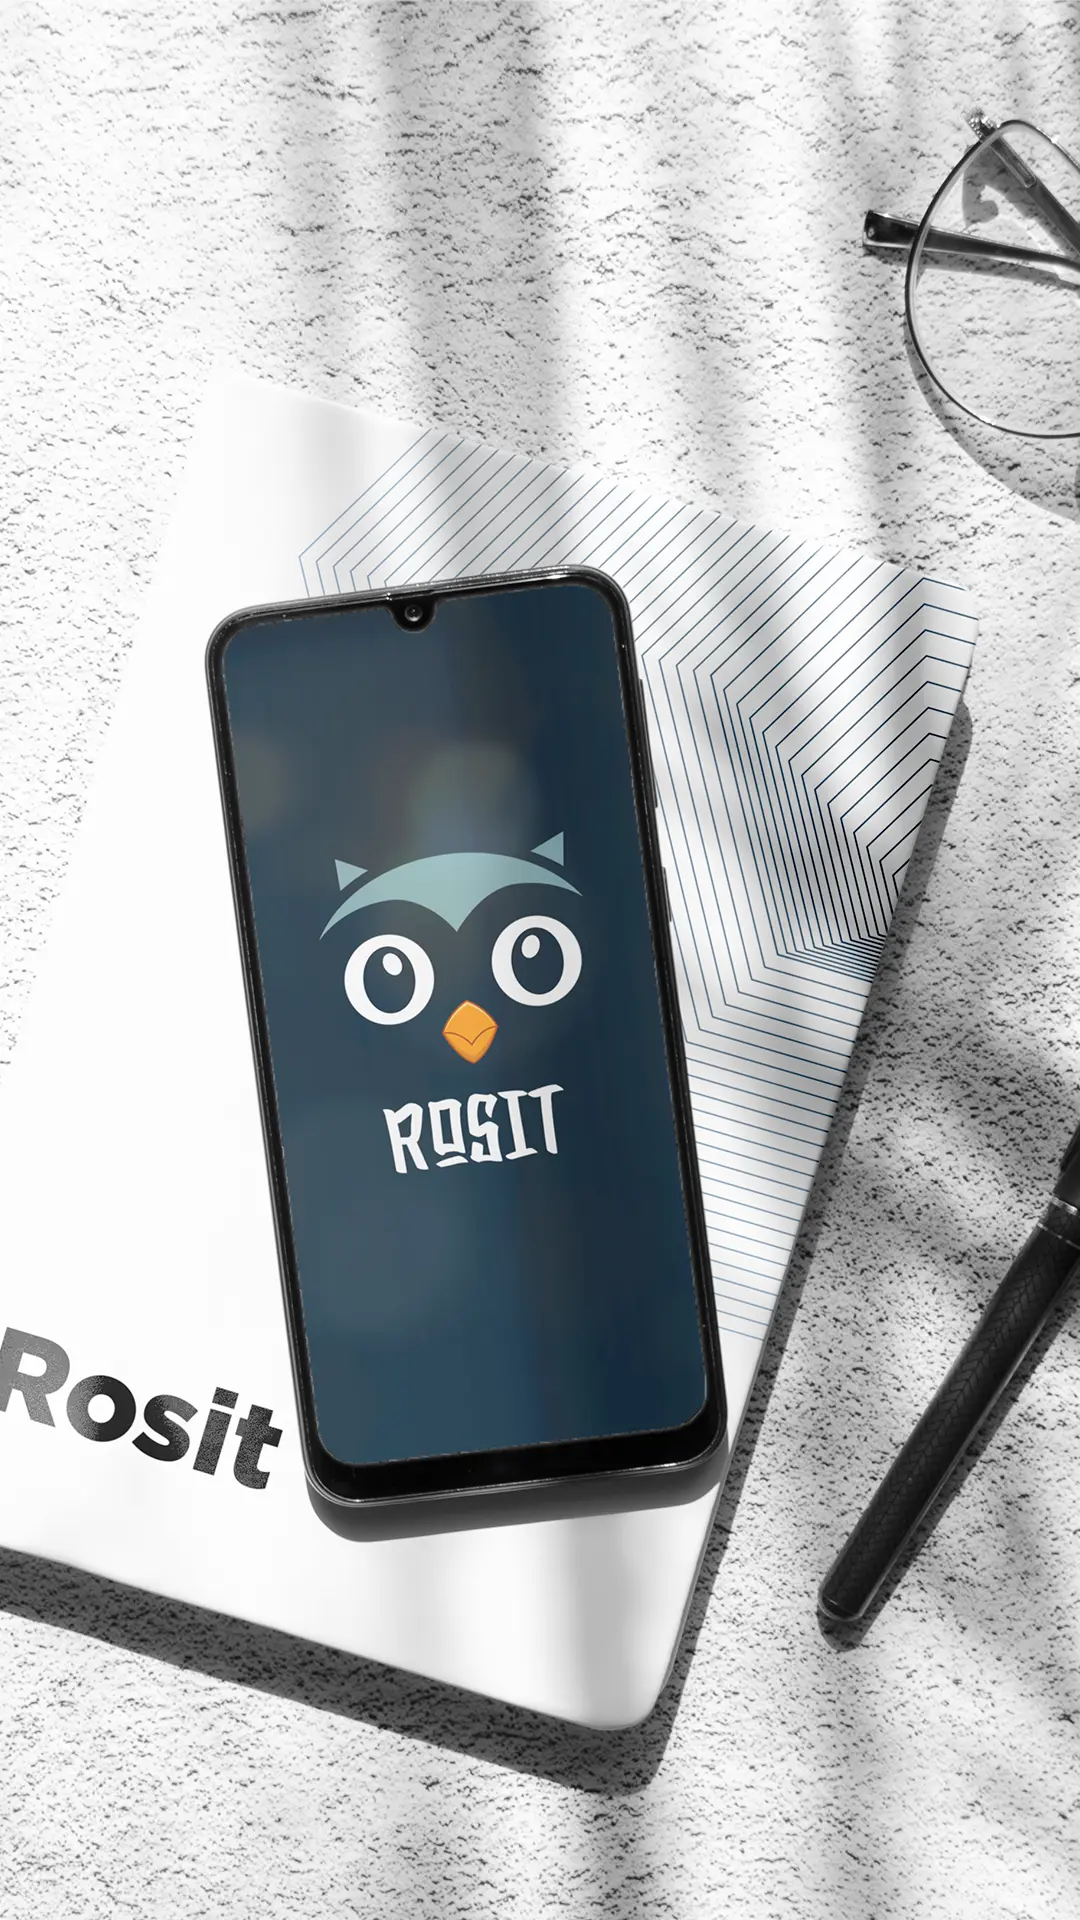 Rosit App